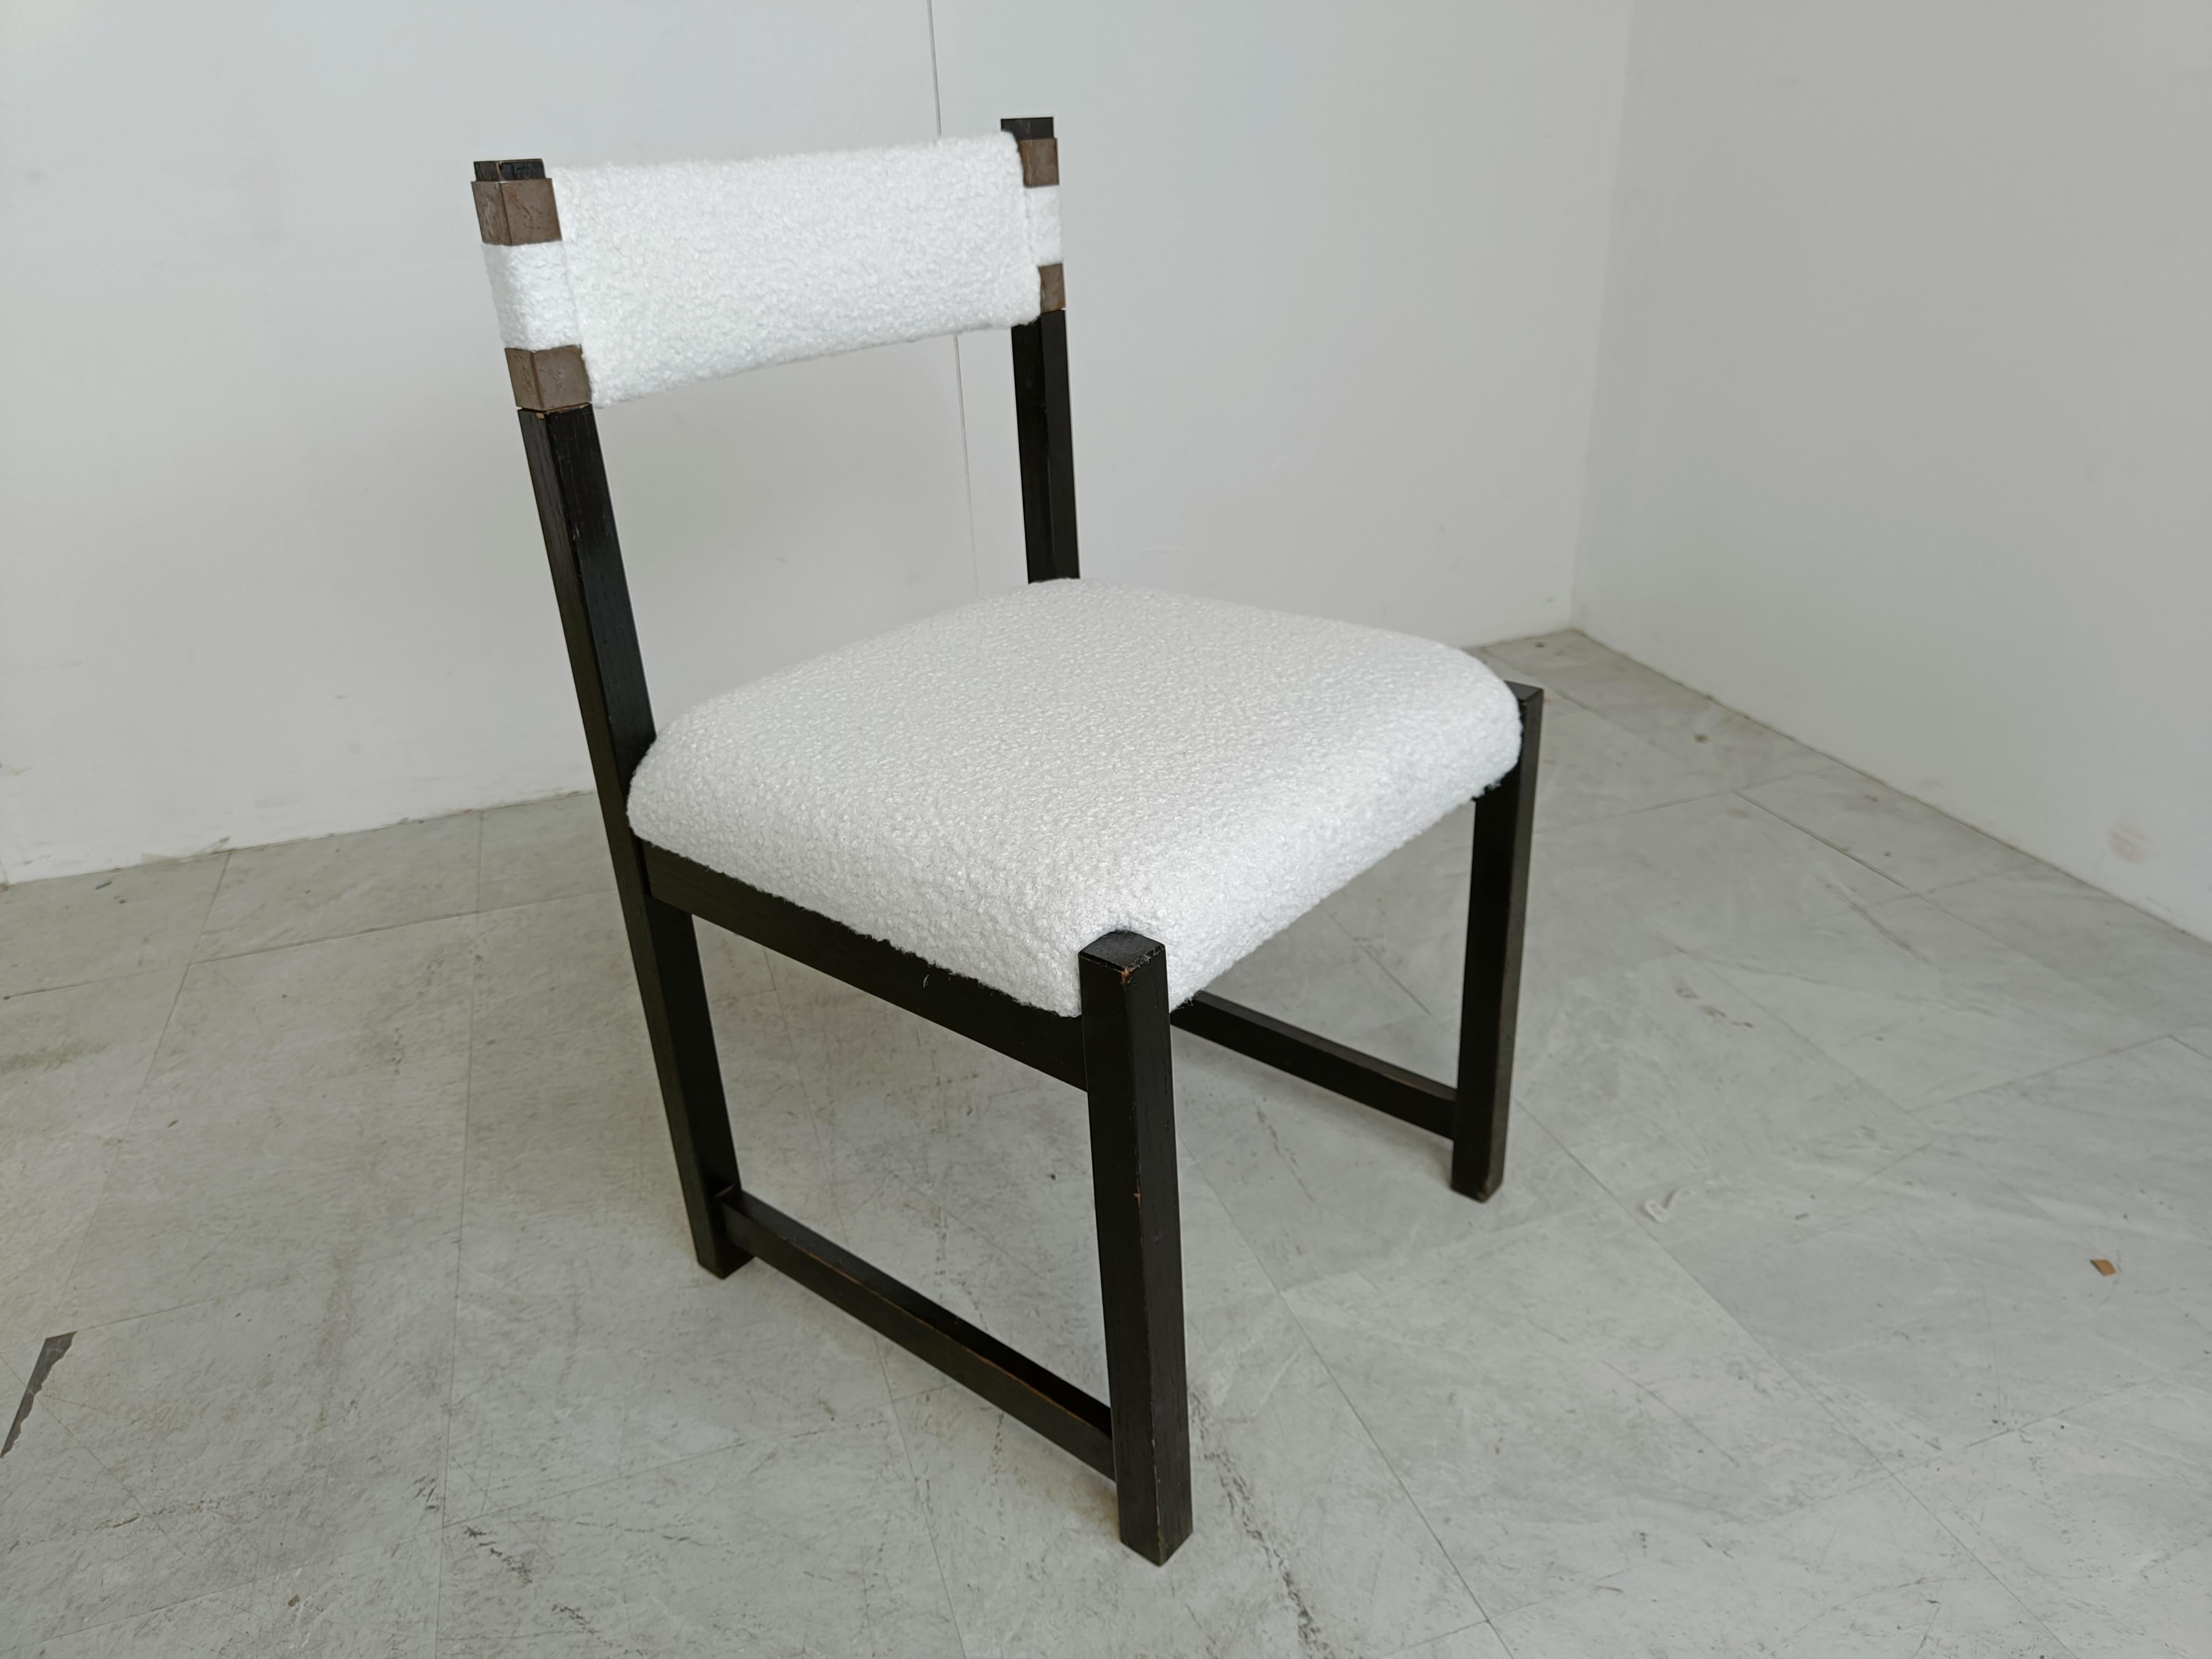 Chaises de salle à manger vintage en tissu bouclé retapissé et en bois ébonisé, conçues par Emiel Veranneman et produites par Decoene.

Design/One intemporel.

Les cadres sont en bon état et les sièges ont été récemment retapissés.

Années 1970 -